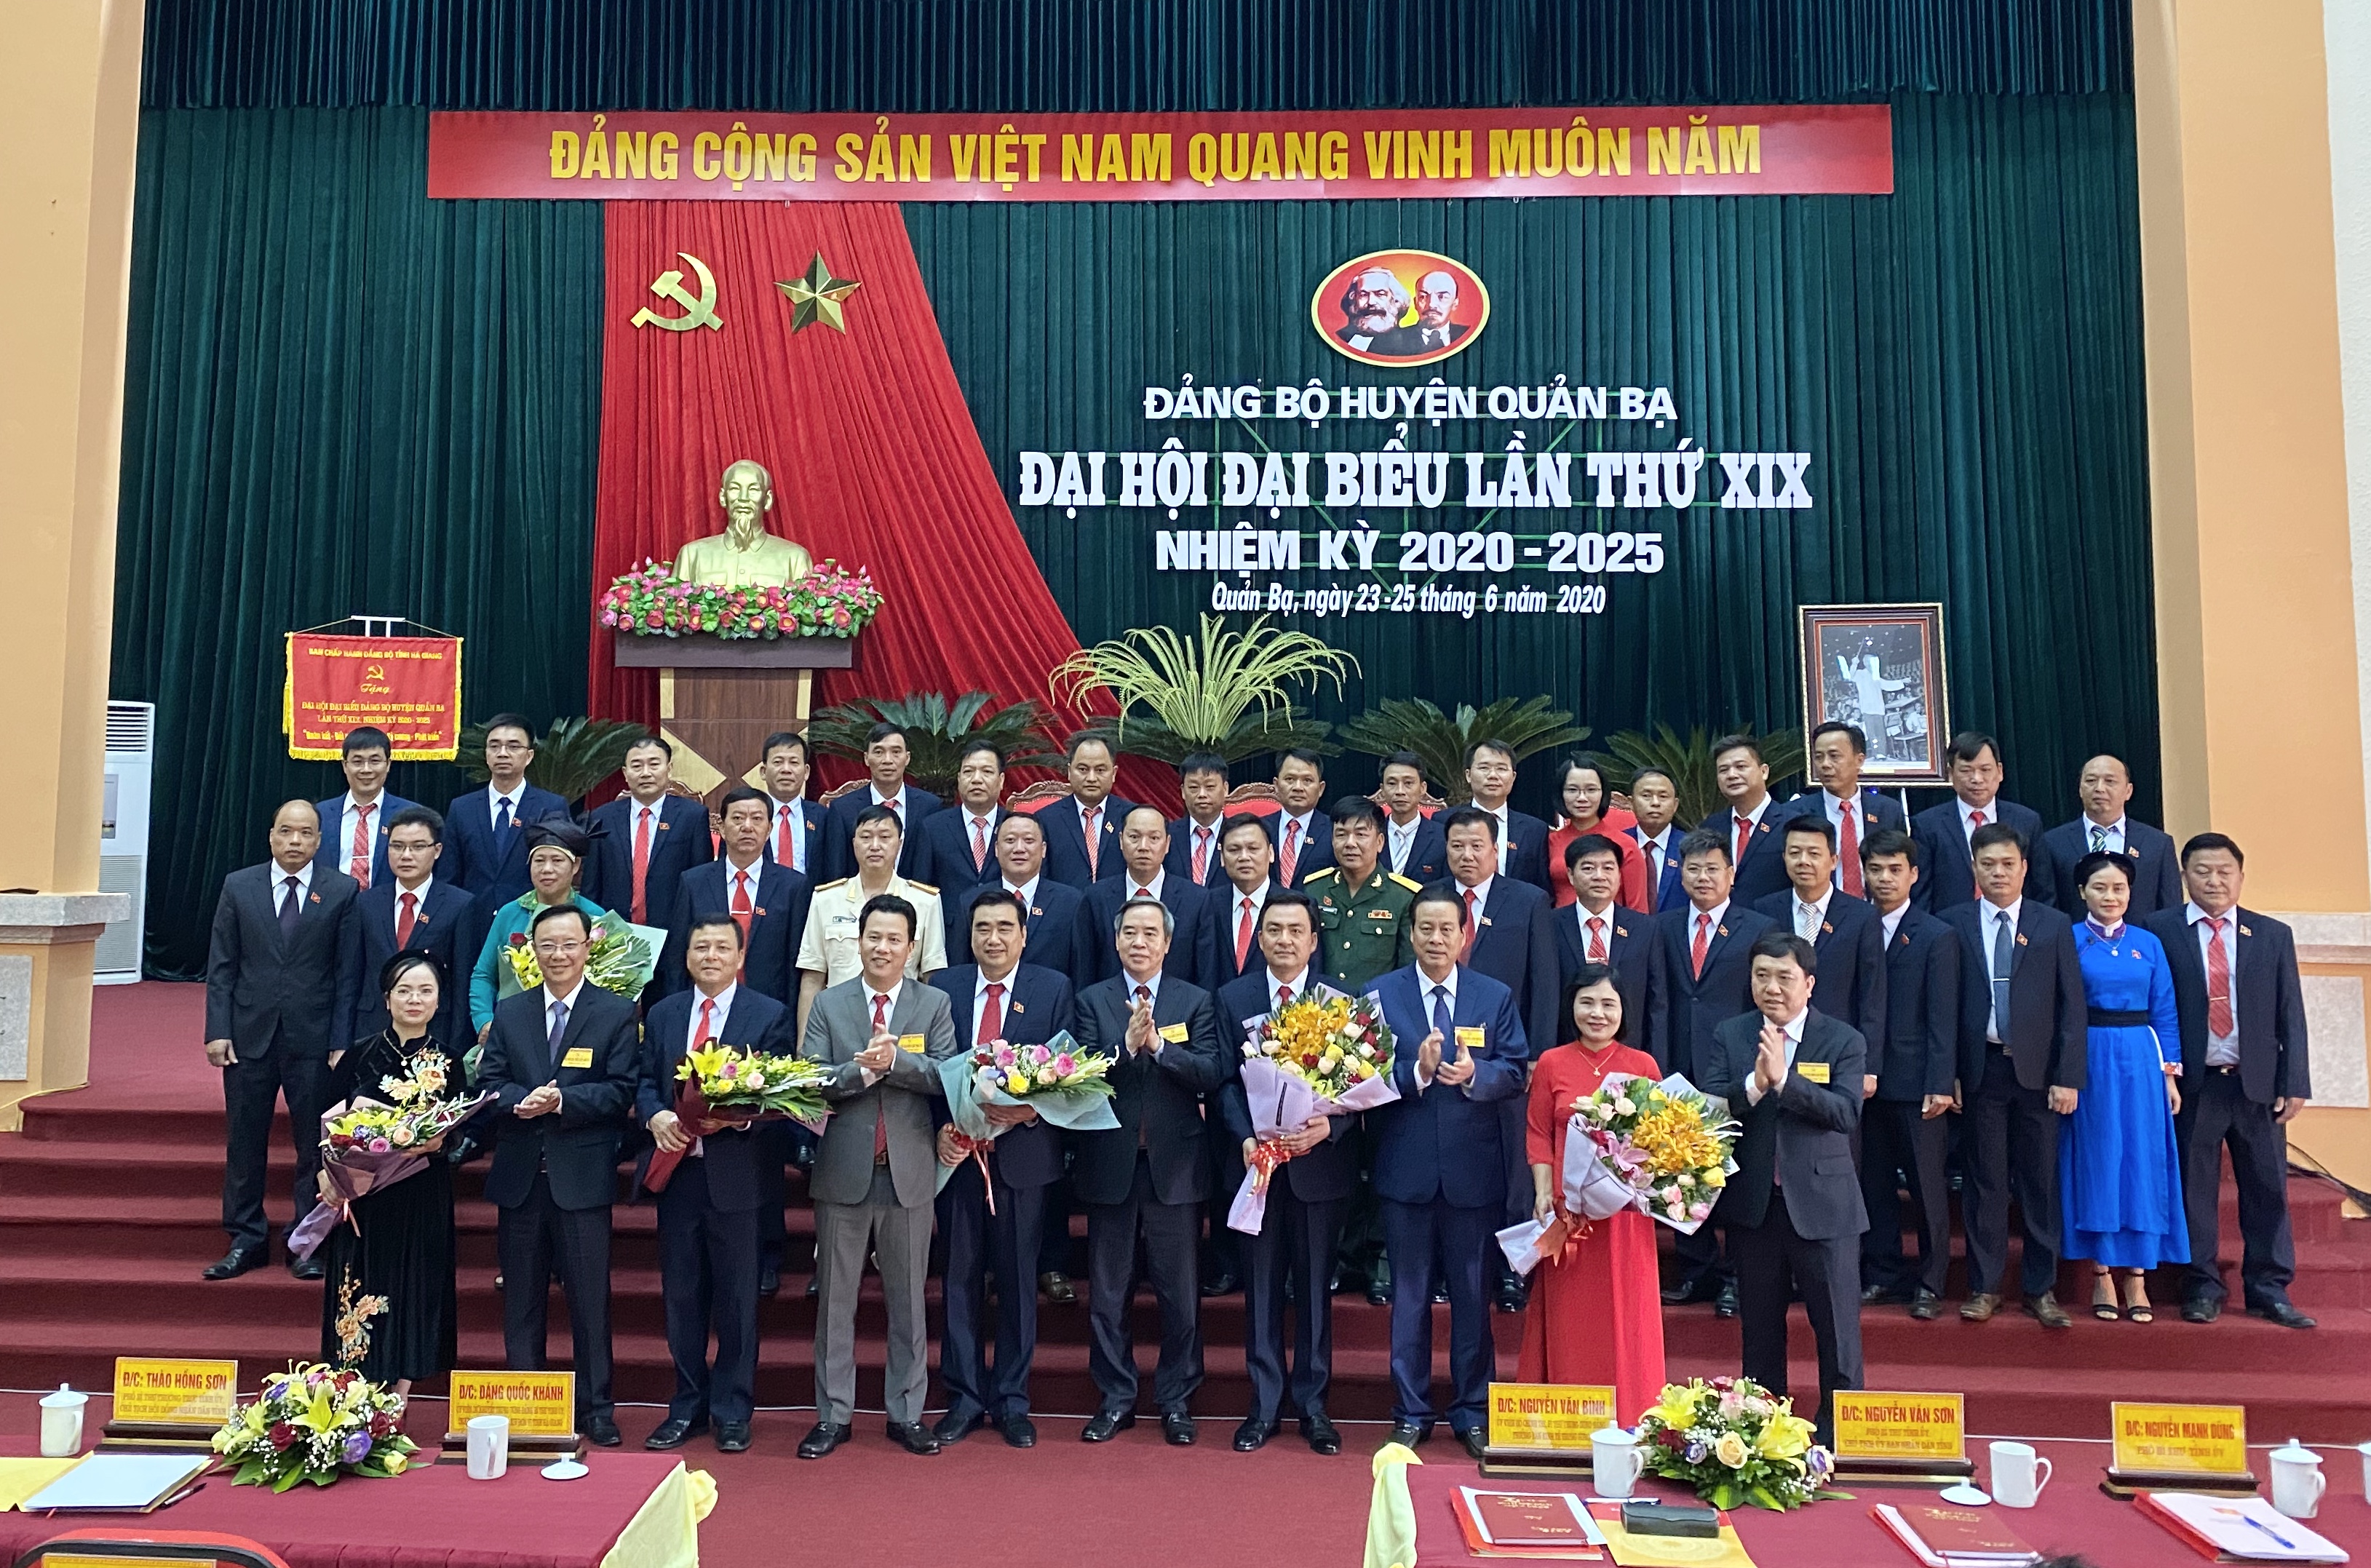 Đồng chí Nguyễn Văn Bình, Trưởng ban Kinh tế Trung ương; đồng chí Đặng Quốc Khánh, Bí thư Tỉnh ủy Hà Giang tặng hoa chúc mừng Ban Chấp hành Đảng bộ huyện Quản Bạ khóa XIX, nhiệm kỳ 2020 – 2025.